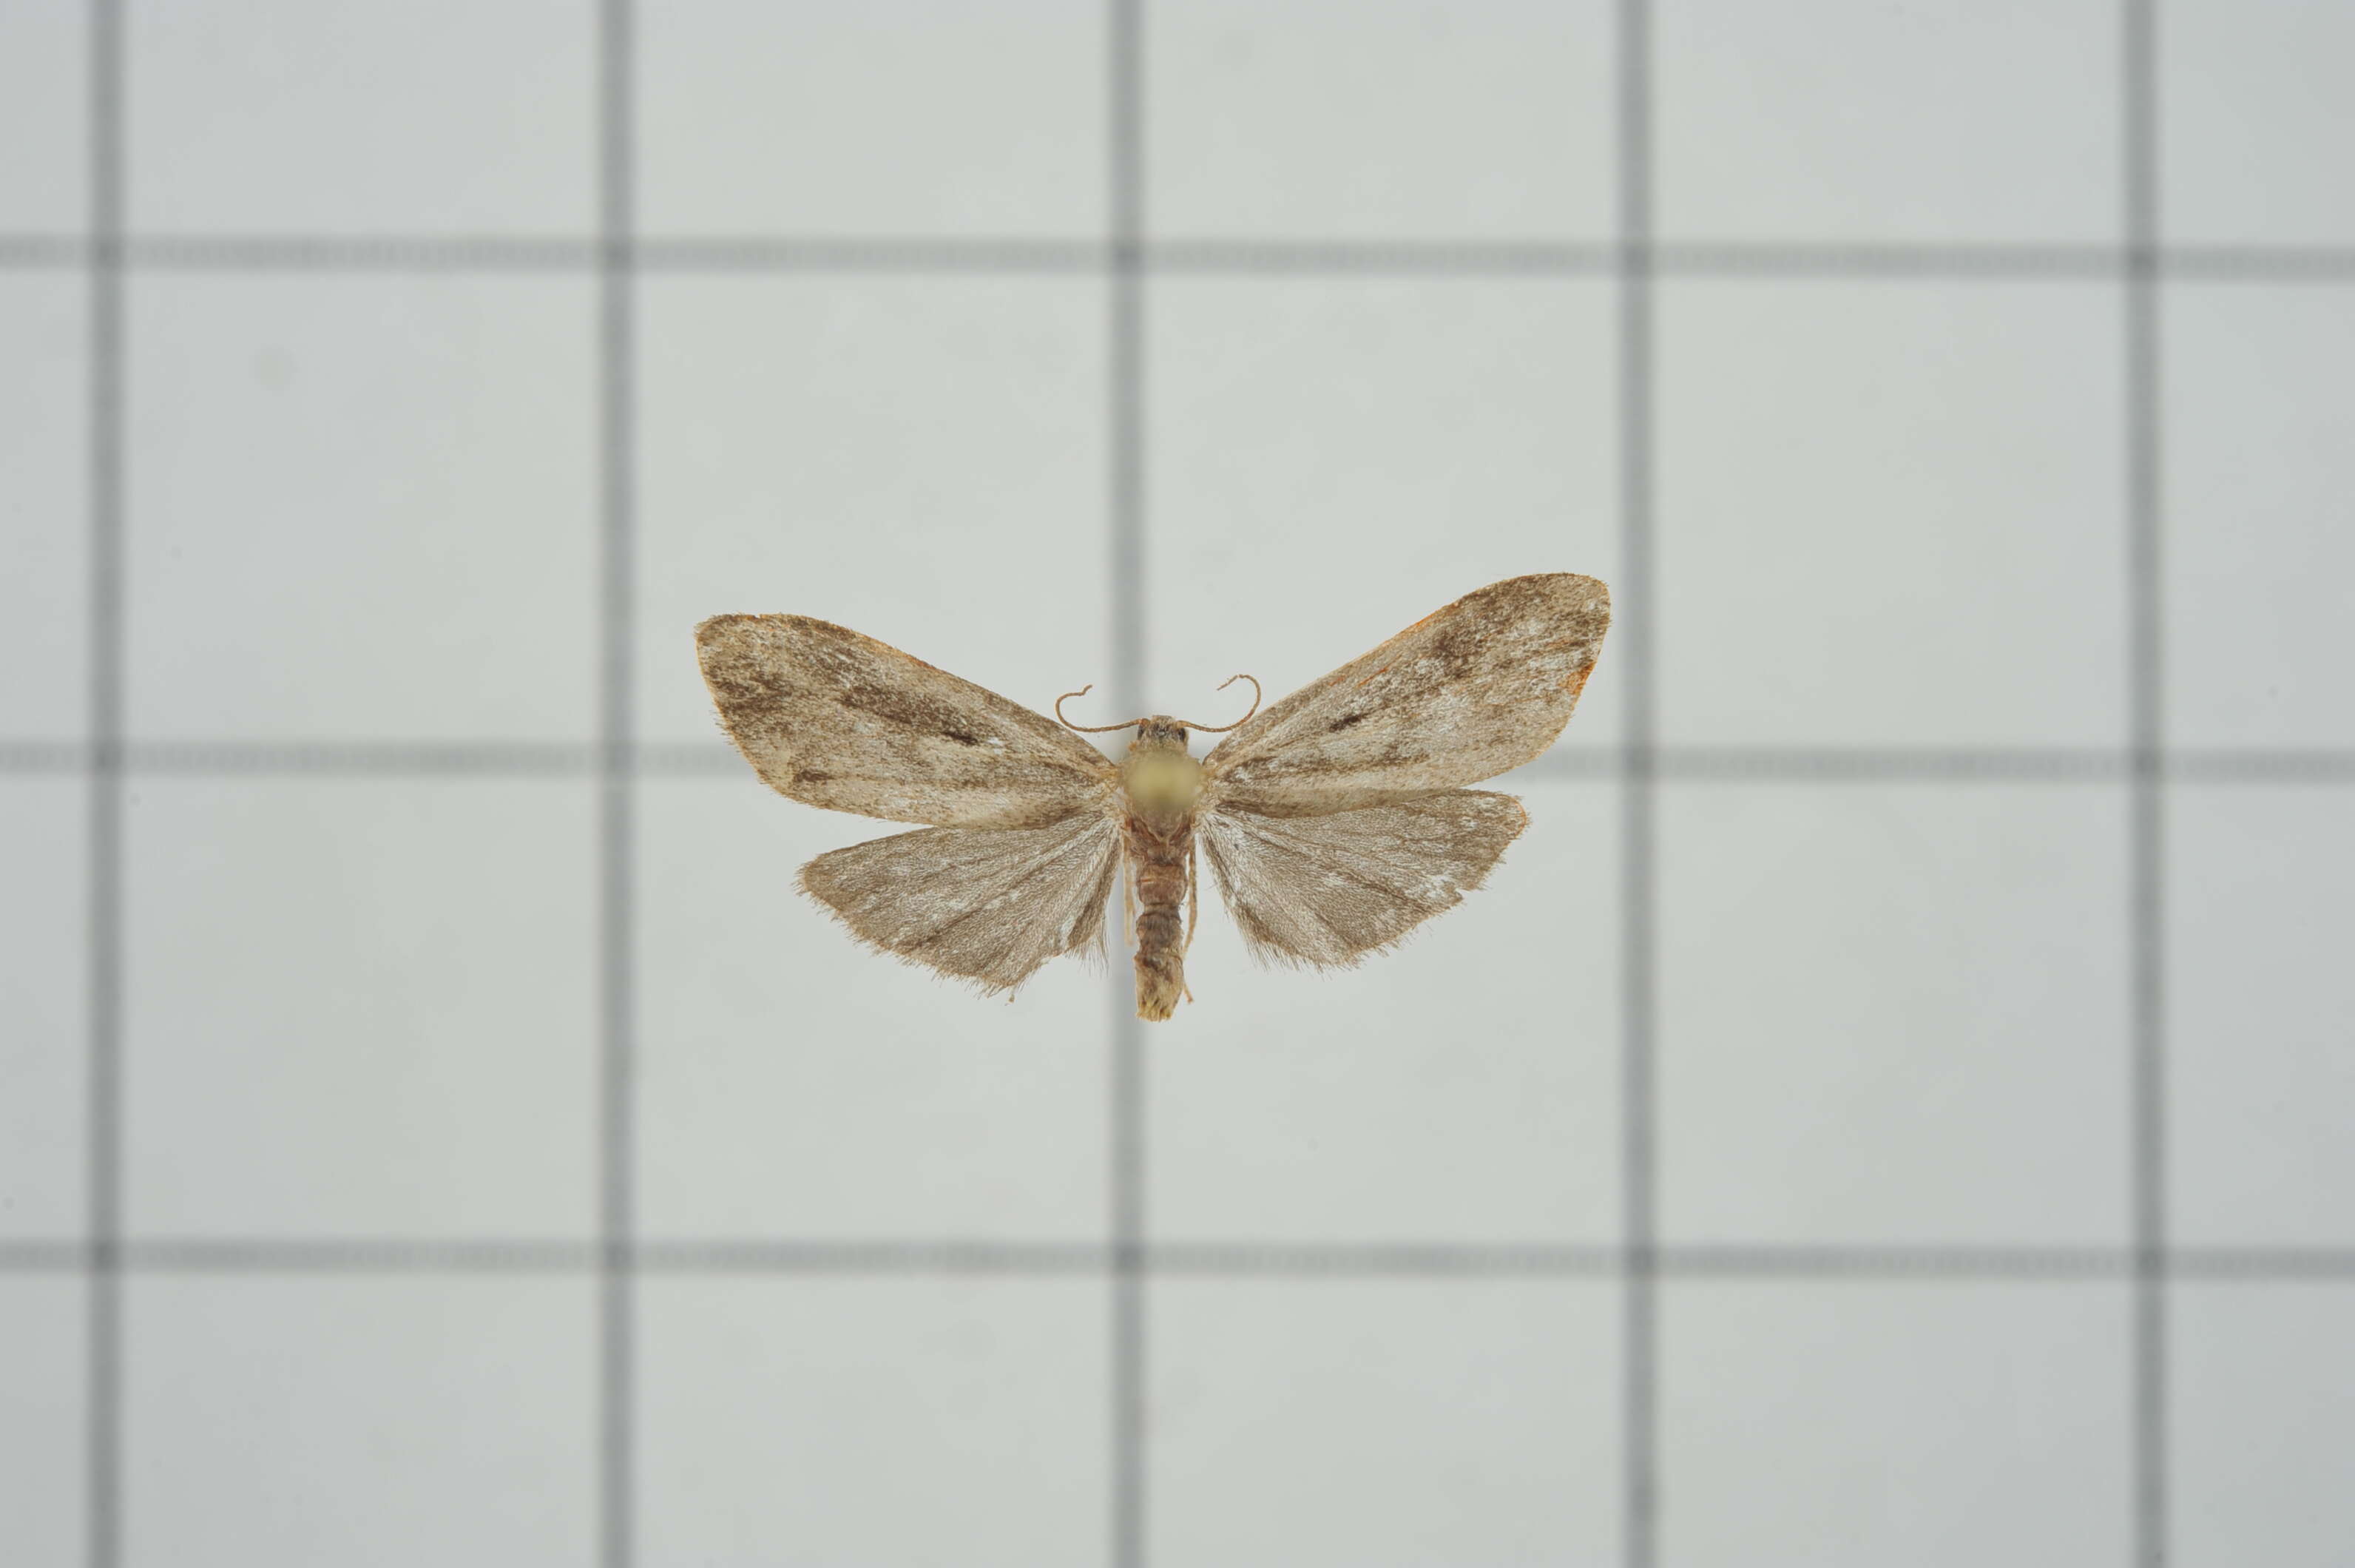 Image of Philenora latifasciata Inoue & Kobayashi 1963